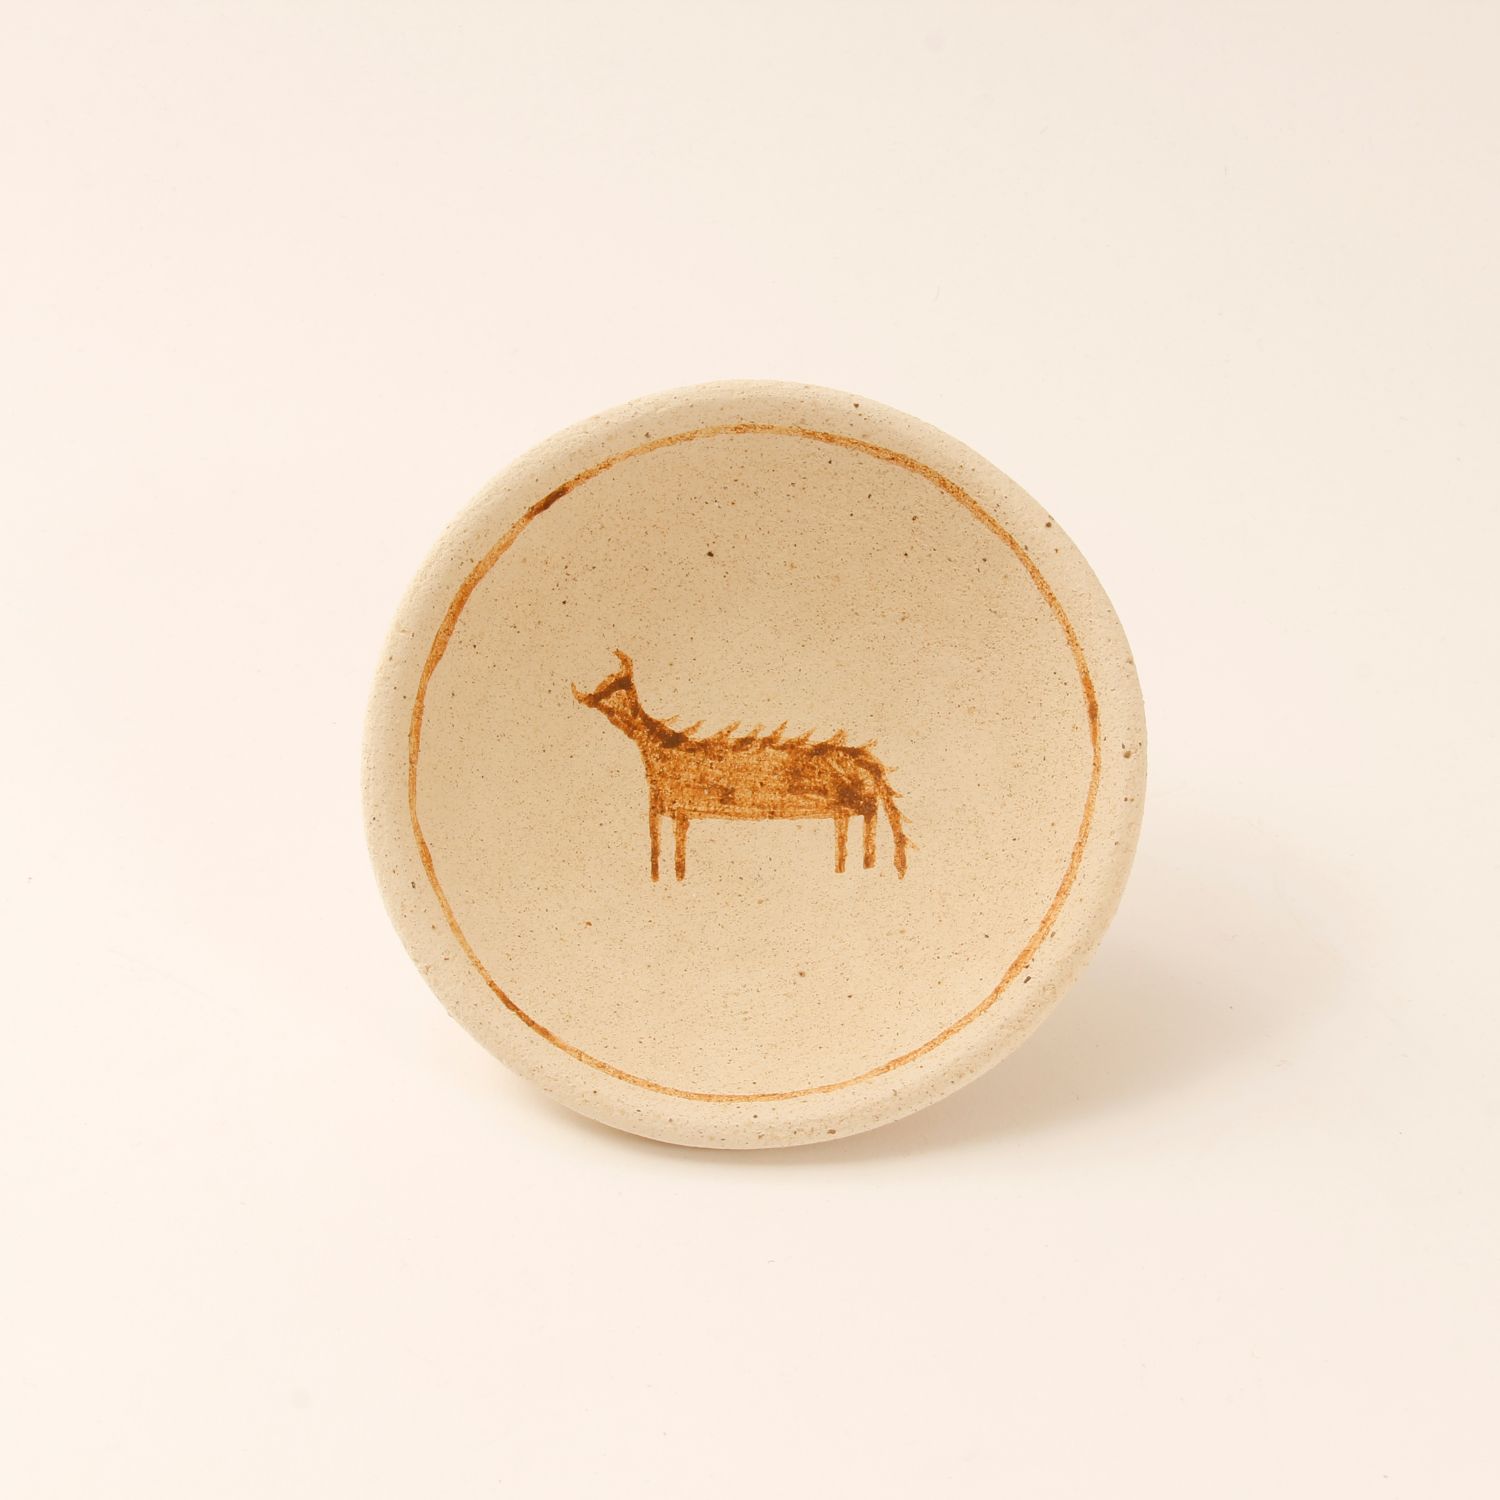 David Migwans: Dancing Deer Bowl Product Image 1 of 1